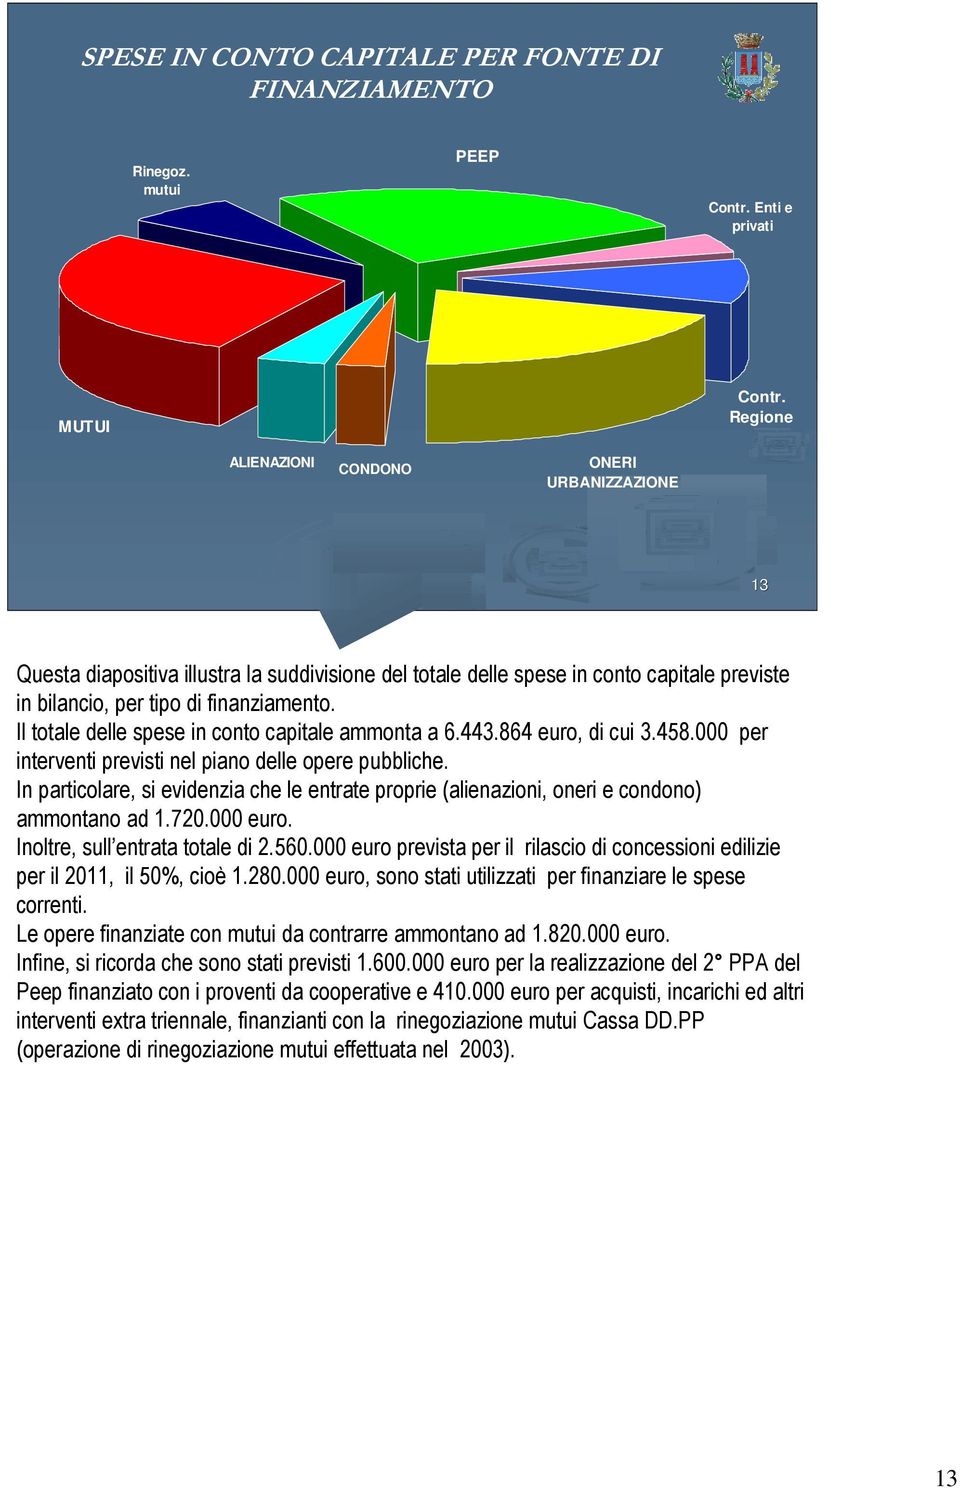 Il totale delle spese in conto capitale ammonta a 6.443.864 euro, di cui 3.458.000 per interventi previsti nel piano delle opere pubbliche.